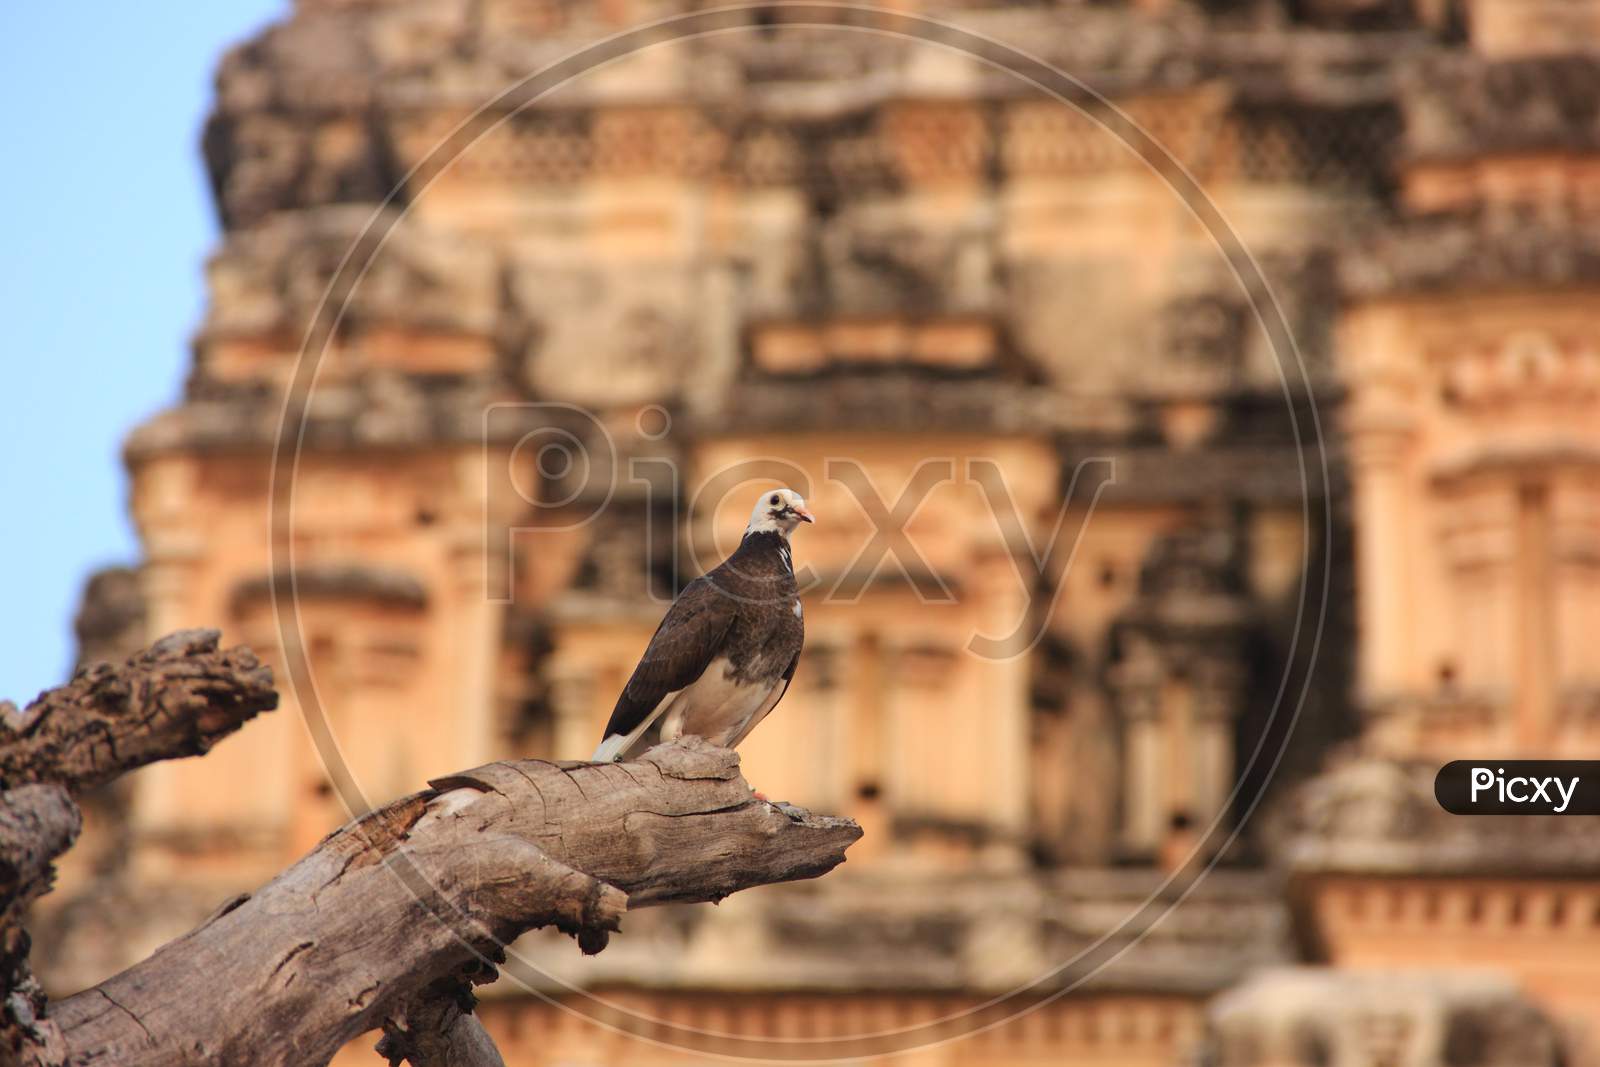 Pigeon at Virupaksha Temple in Hampi, India